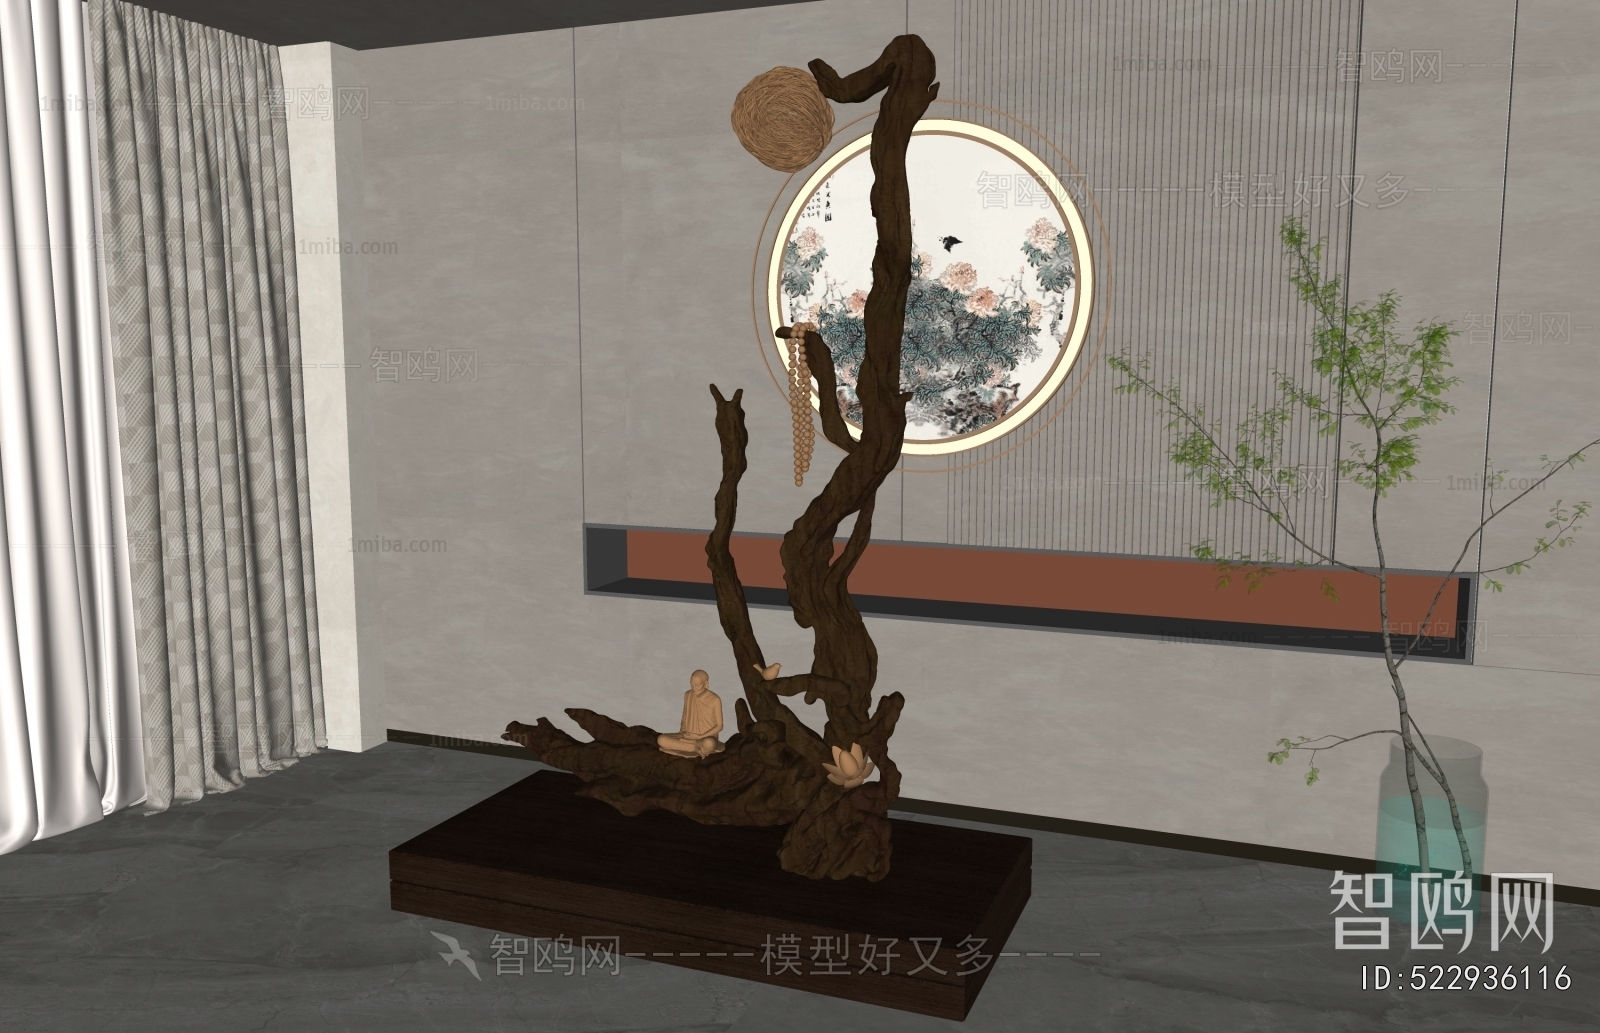 新中式树根雕塑装置摆件